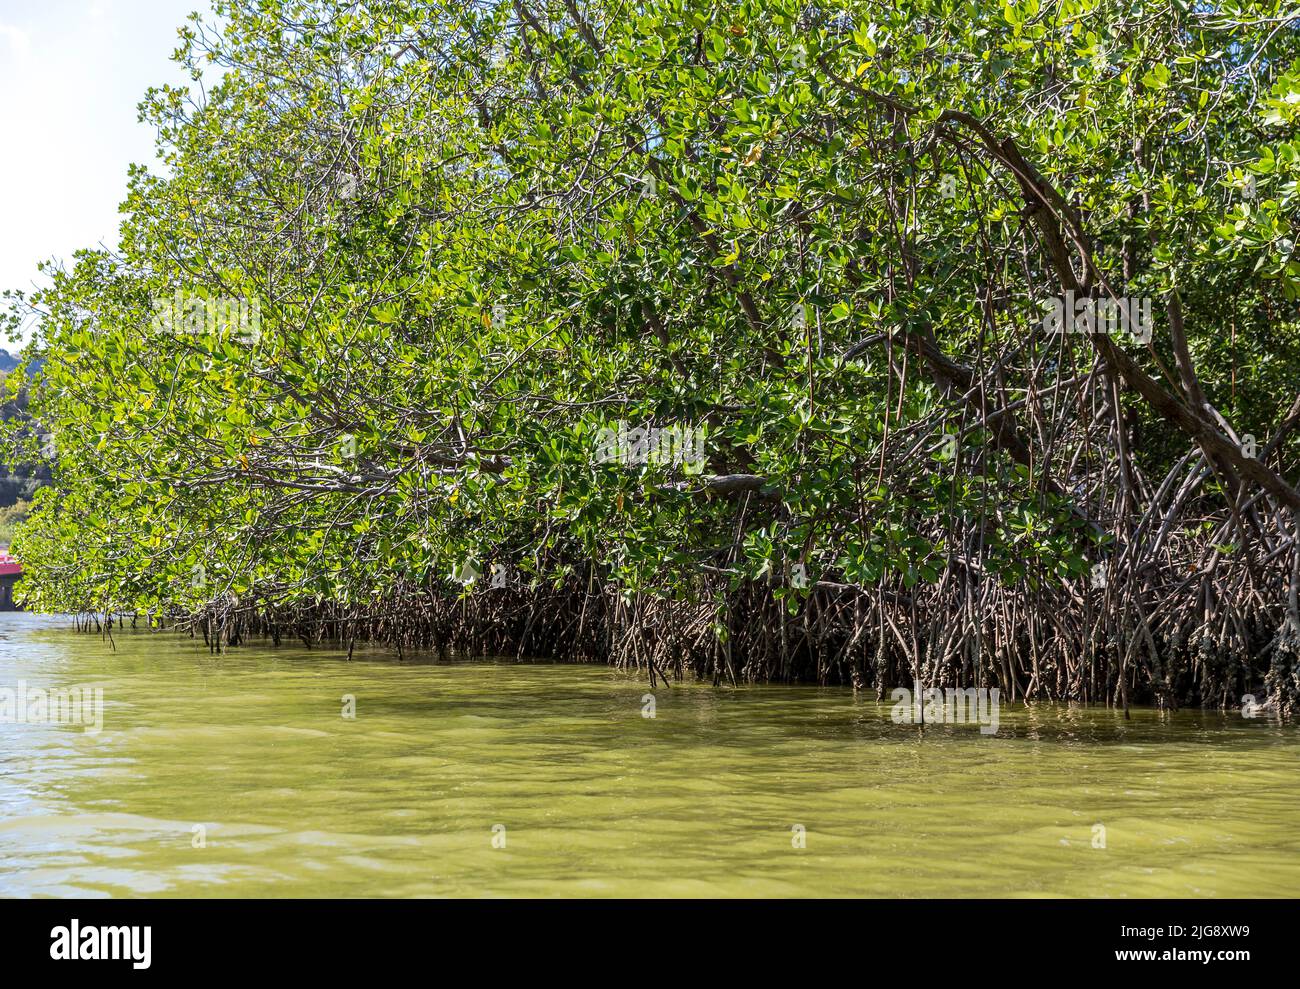 Mangroves, rivière Khao Daeng, parc national Khao Sam Roi Yot, province de Prachuap Khiri Khan, Thaïlande, Asie Banque D'Images